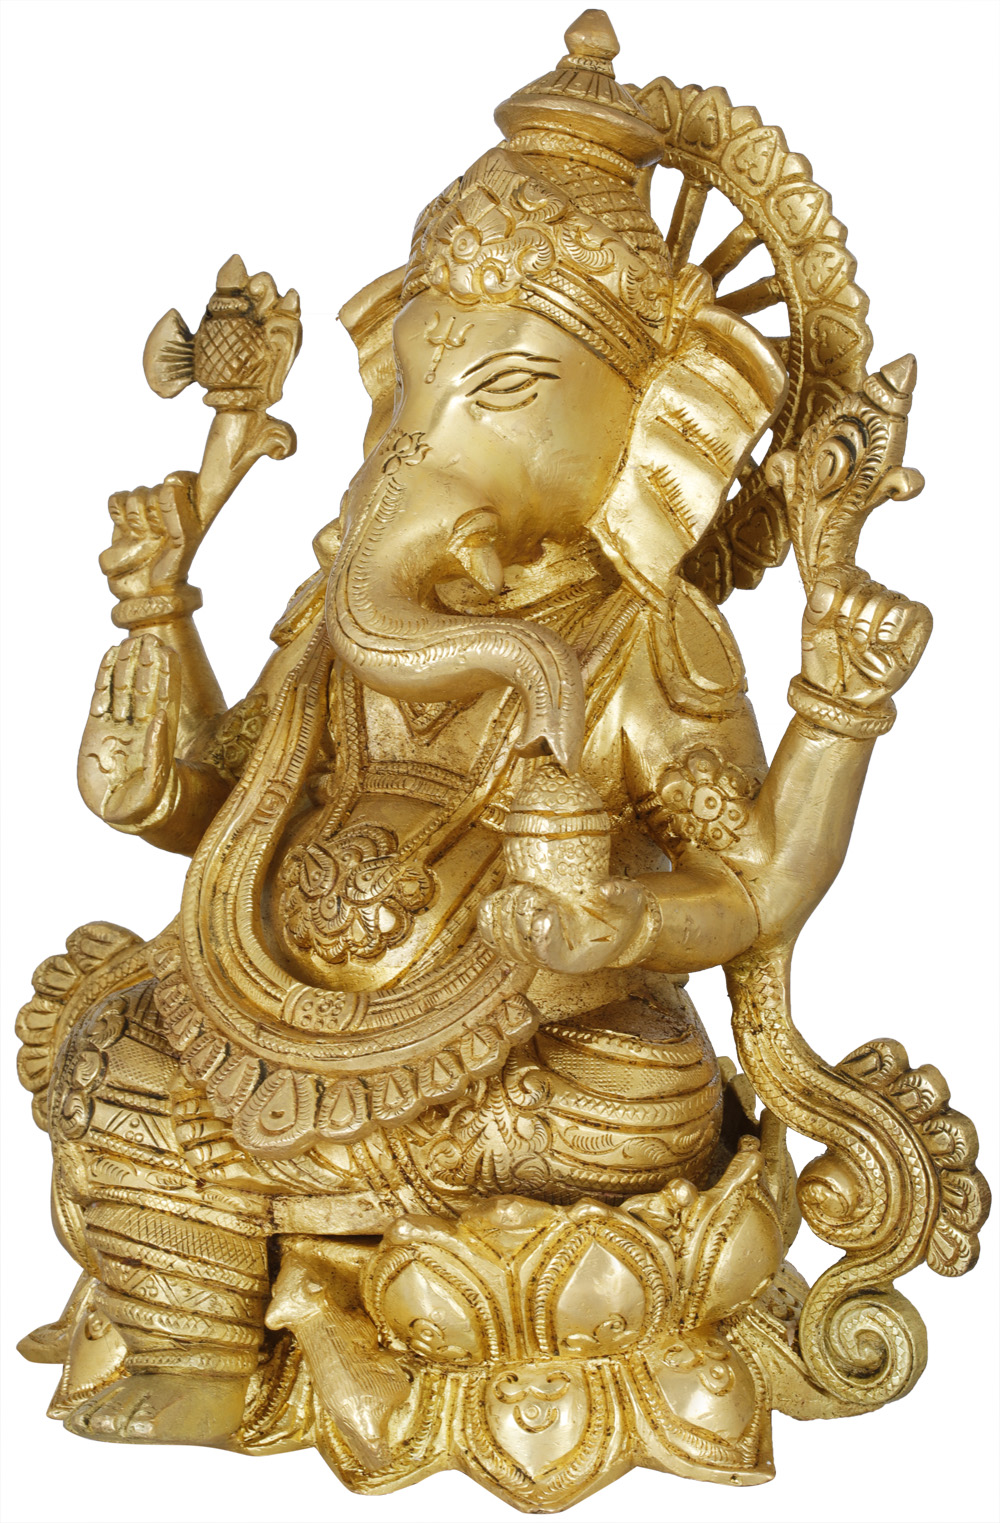 Get Kamalasana Ganesha